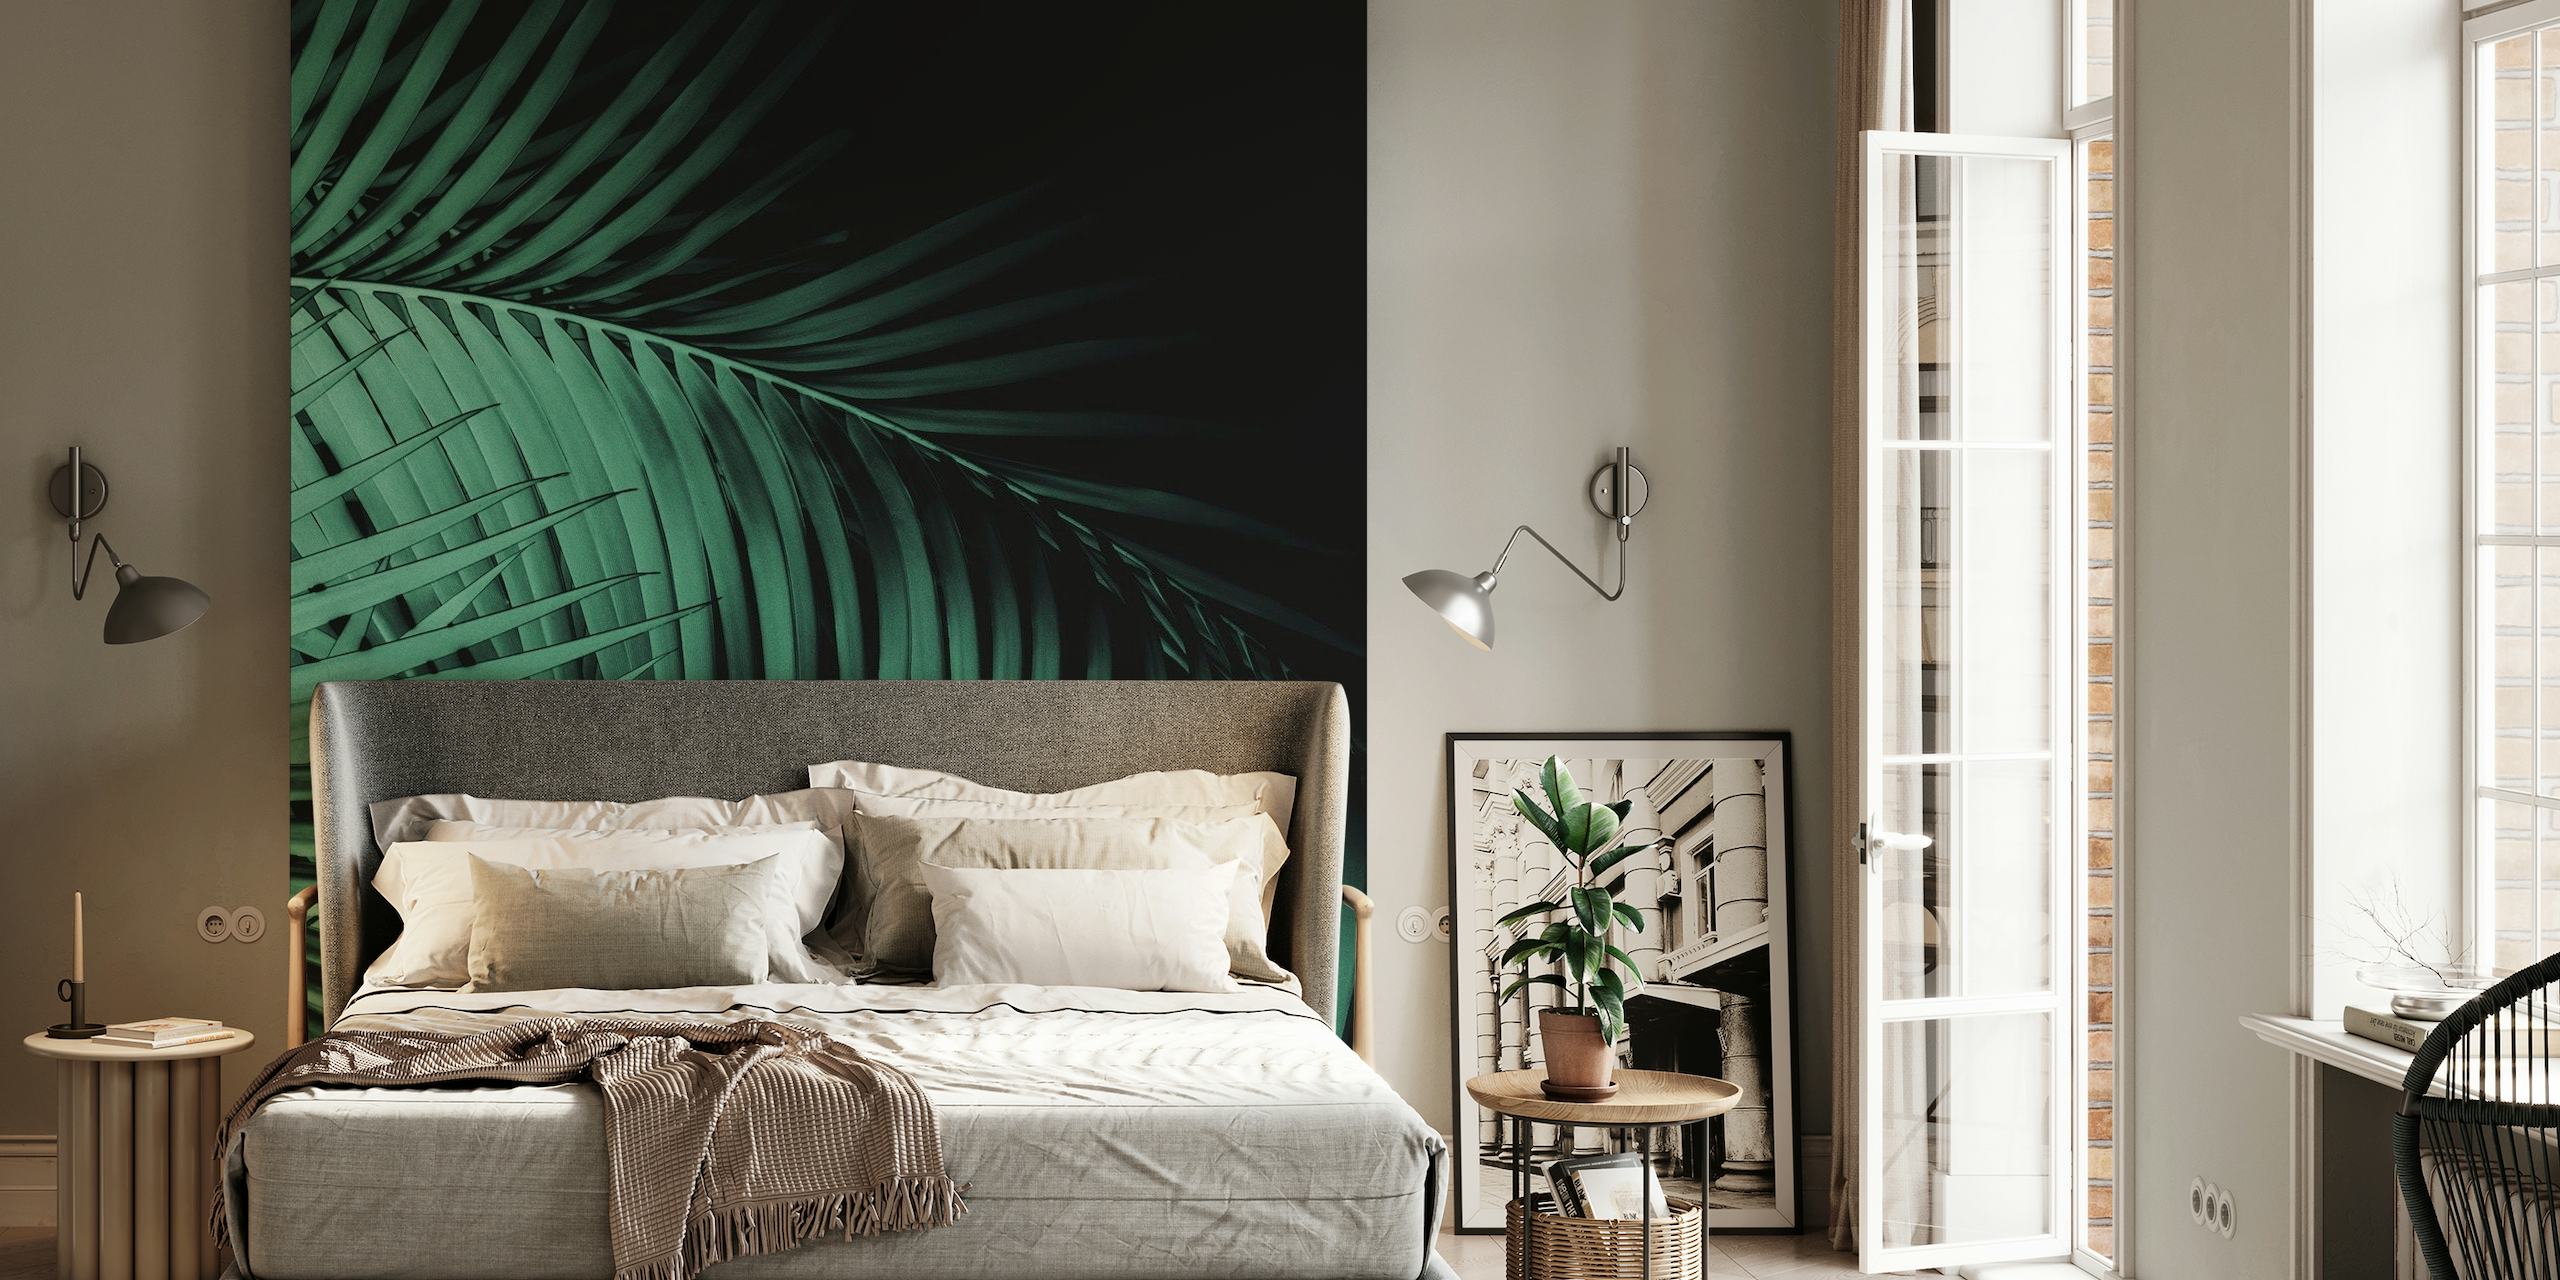 Papier peint Palm Leaves Green Vibes 7 avec un motif de feuillage de palmier dense dans des tons de vert